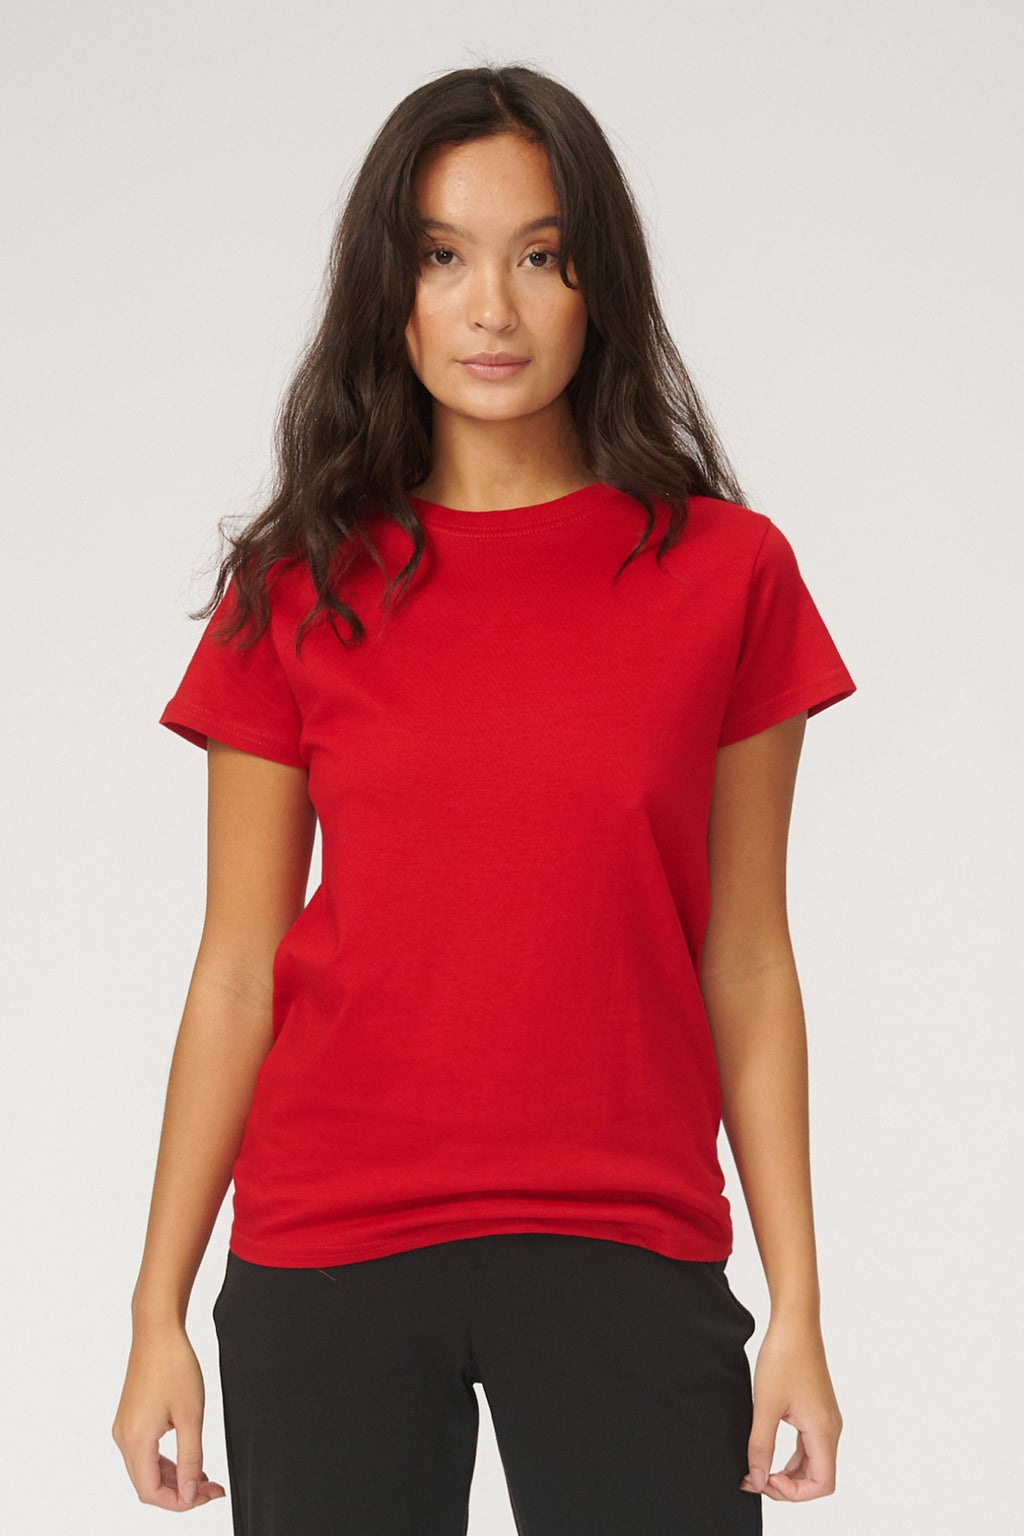 Basic Tričko - červené